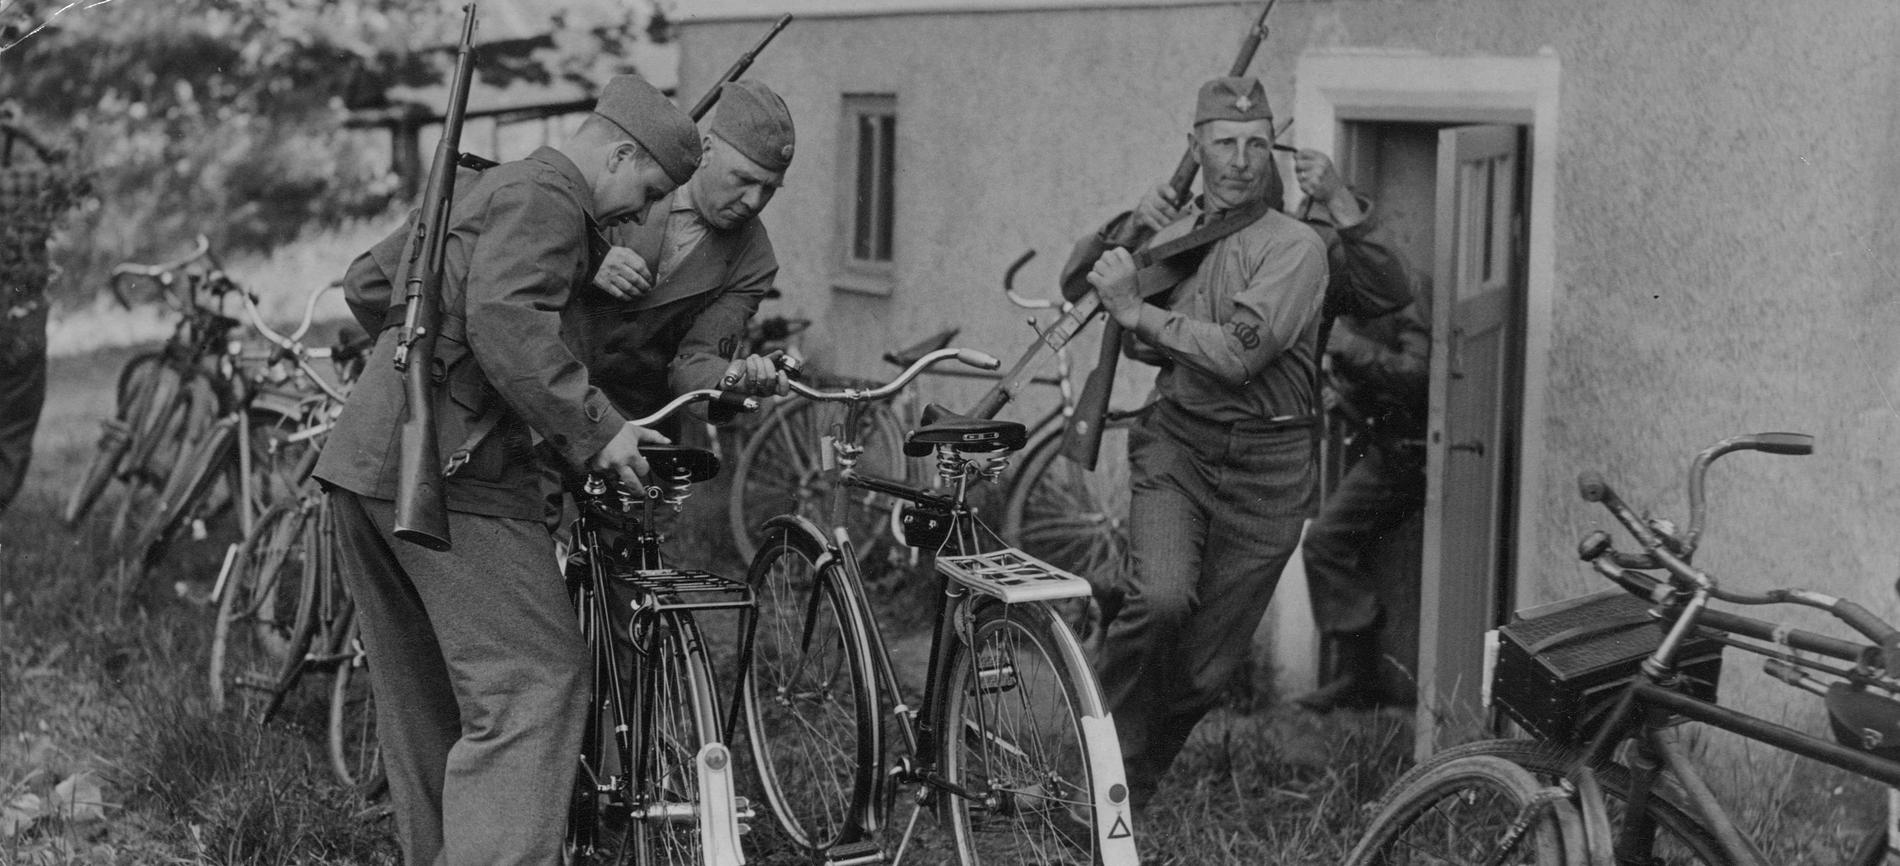 Kurs för hemvärnsledare i Tullinge. Larm har gått om fienden och hemvärnsmännen skyndar till sina cyklar.